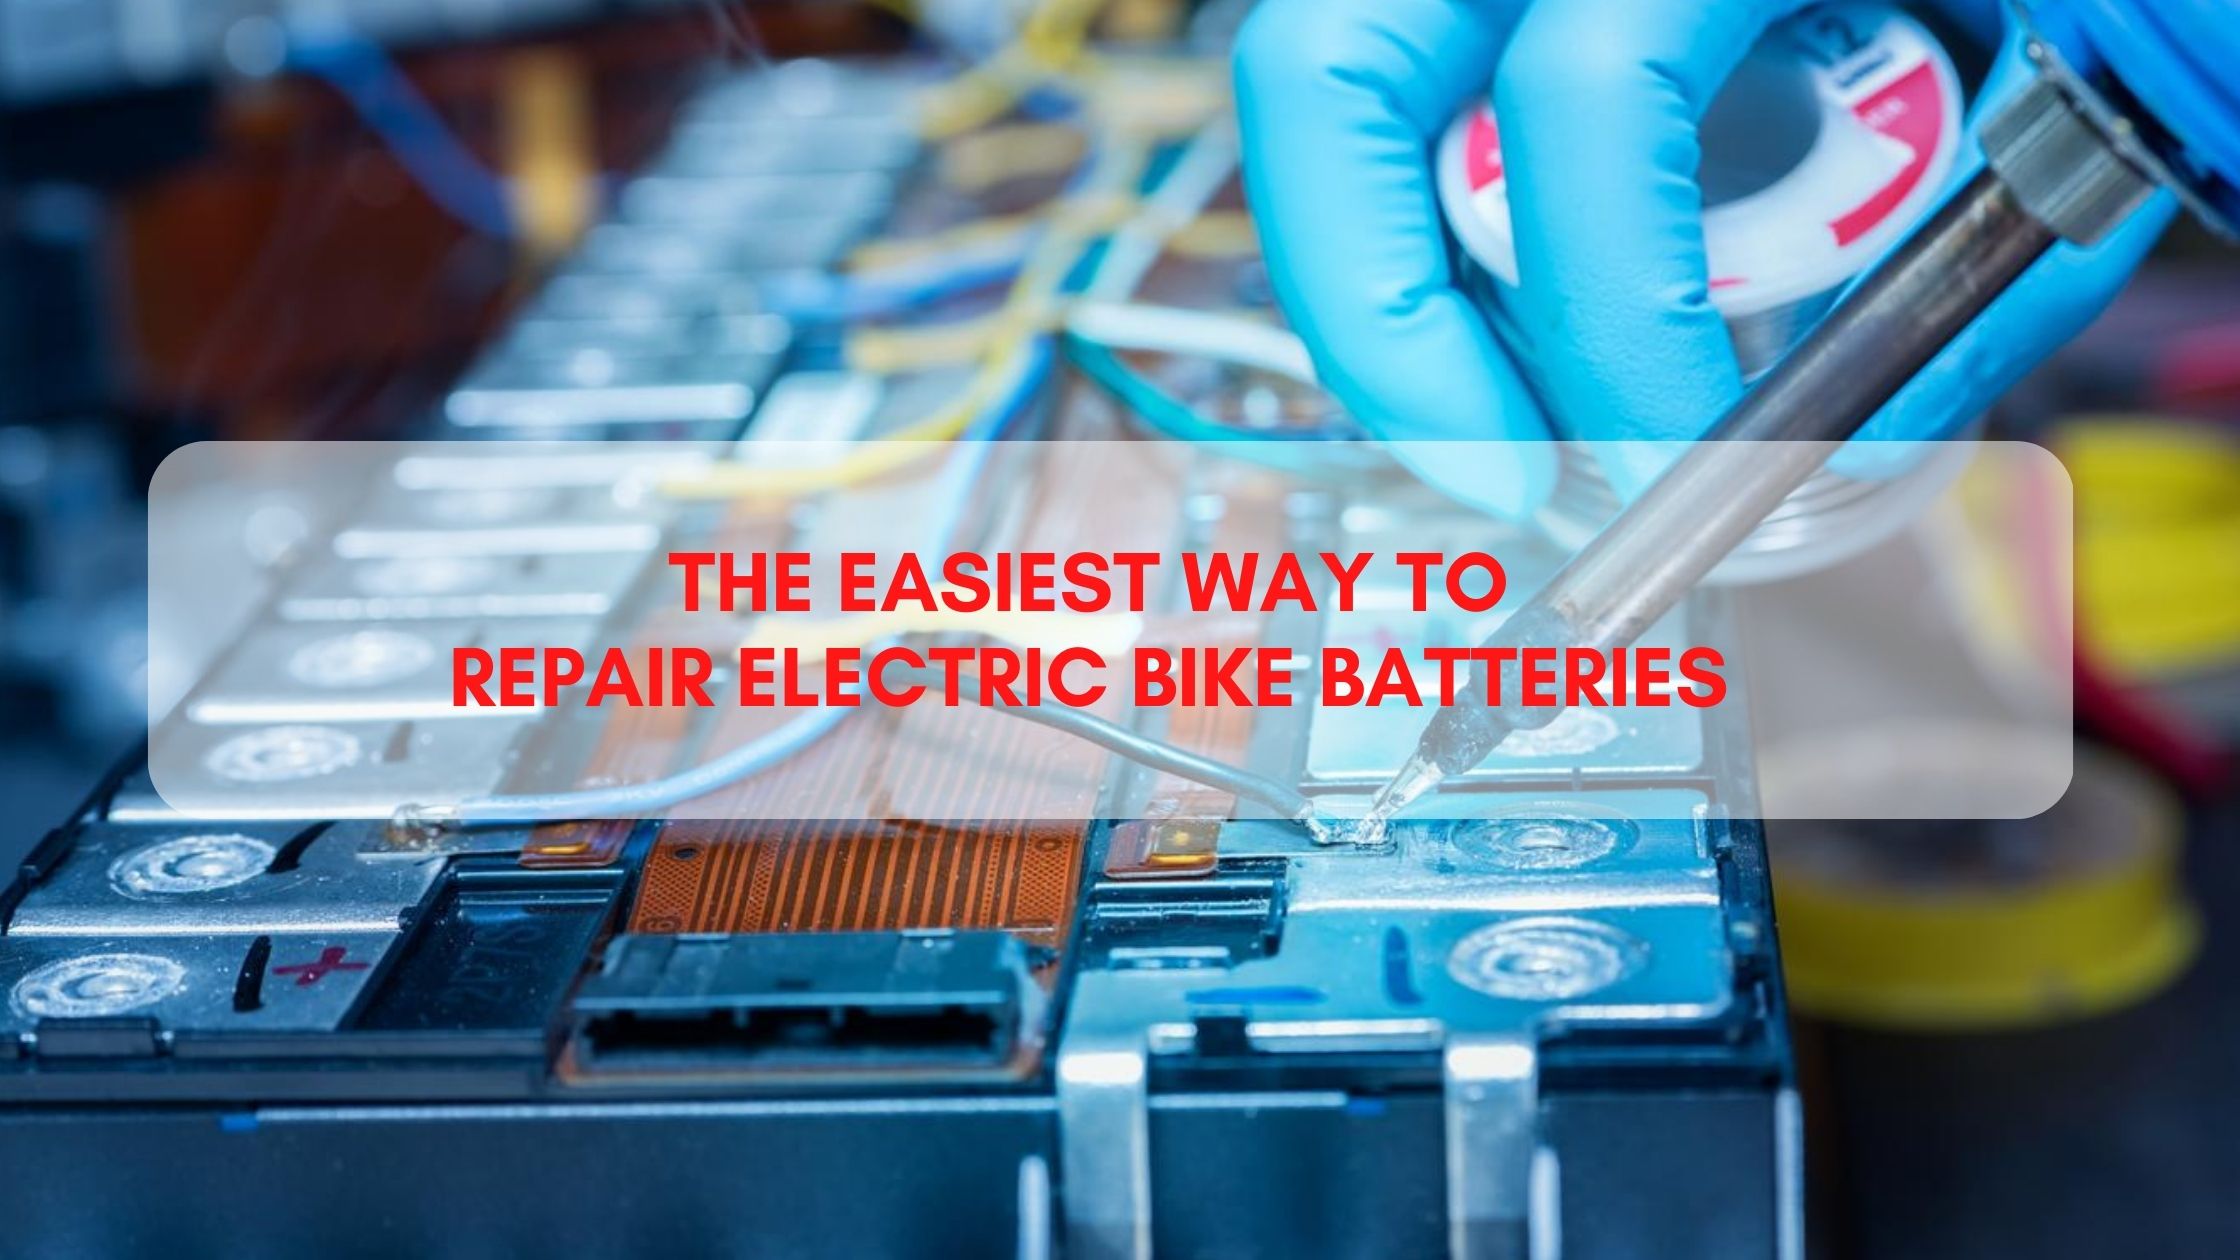 THE EASIEST WAY To Repair Electric Bike Batteries